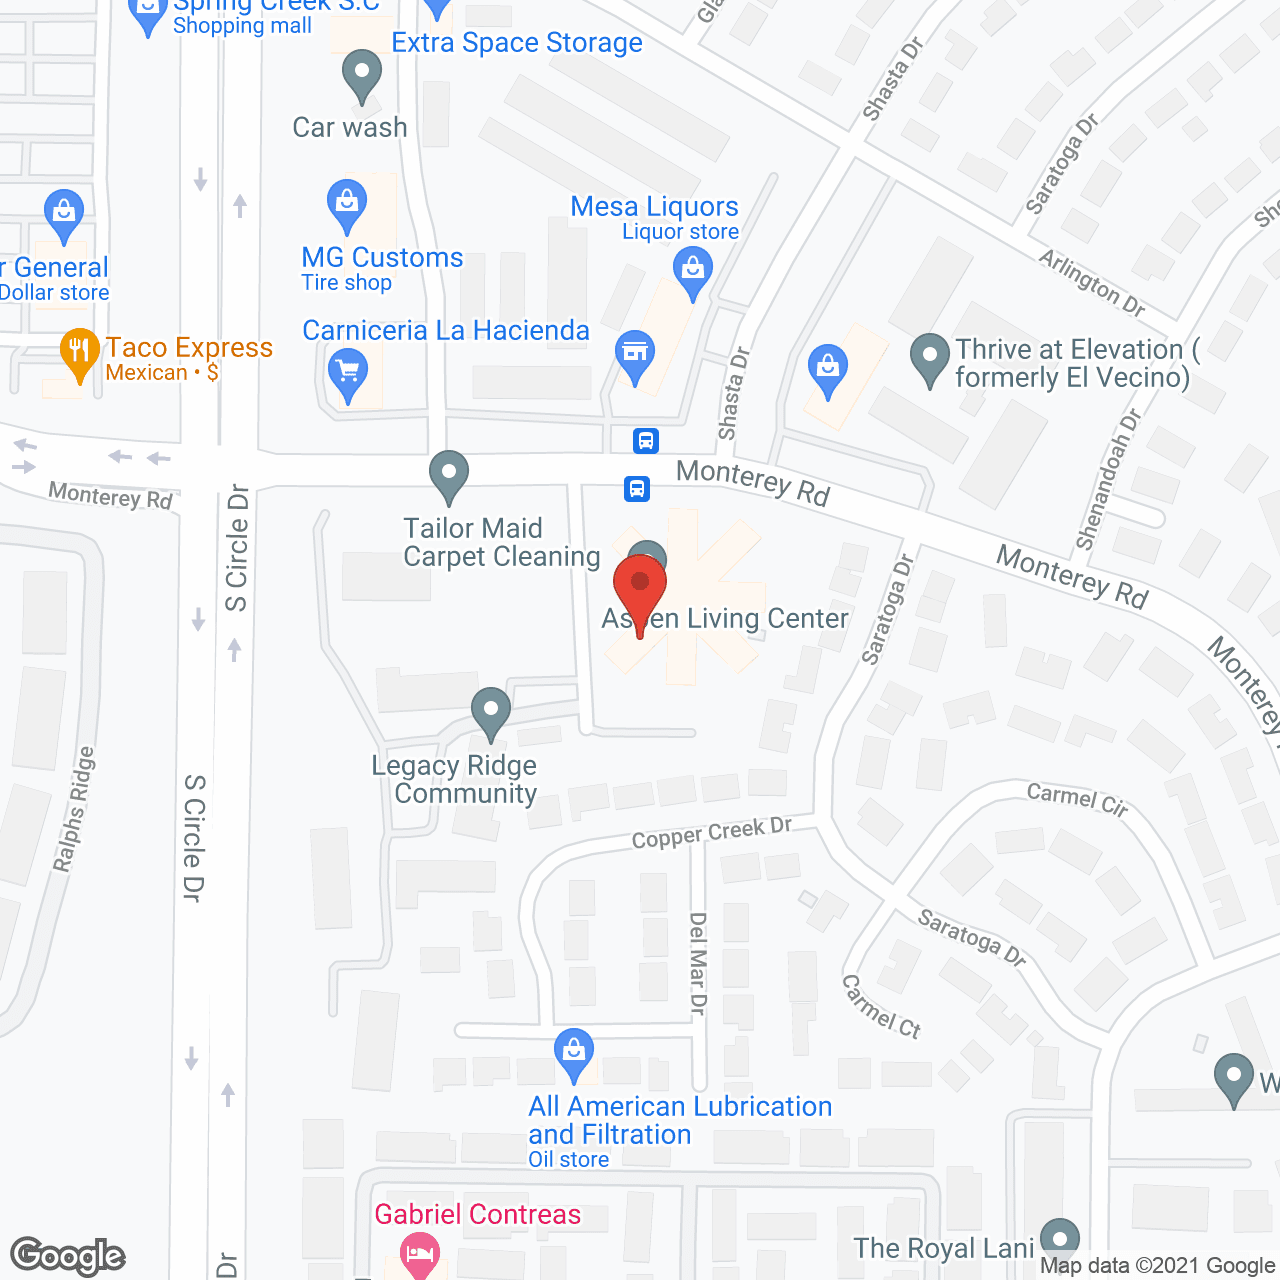 Aspen Living Center in google map